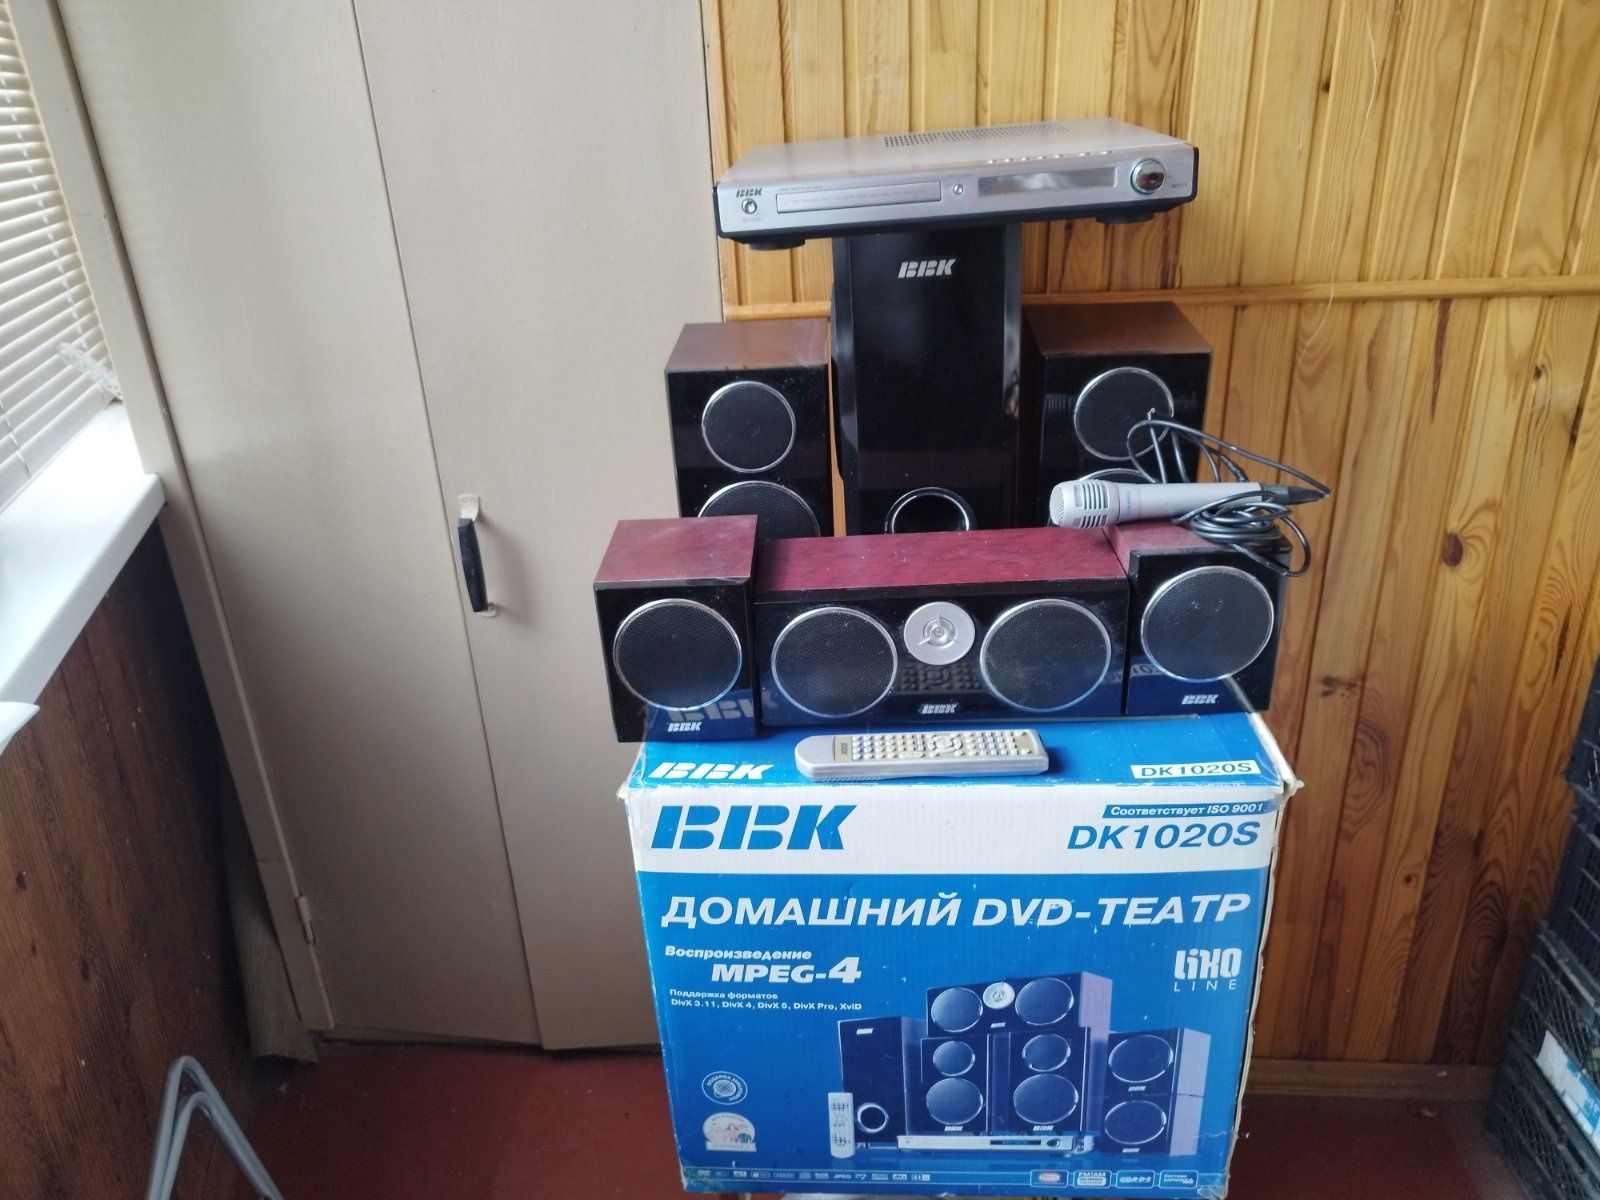 Домашній кінотеатр акустична система 5.1 Bbk DK 1020S